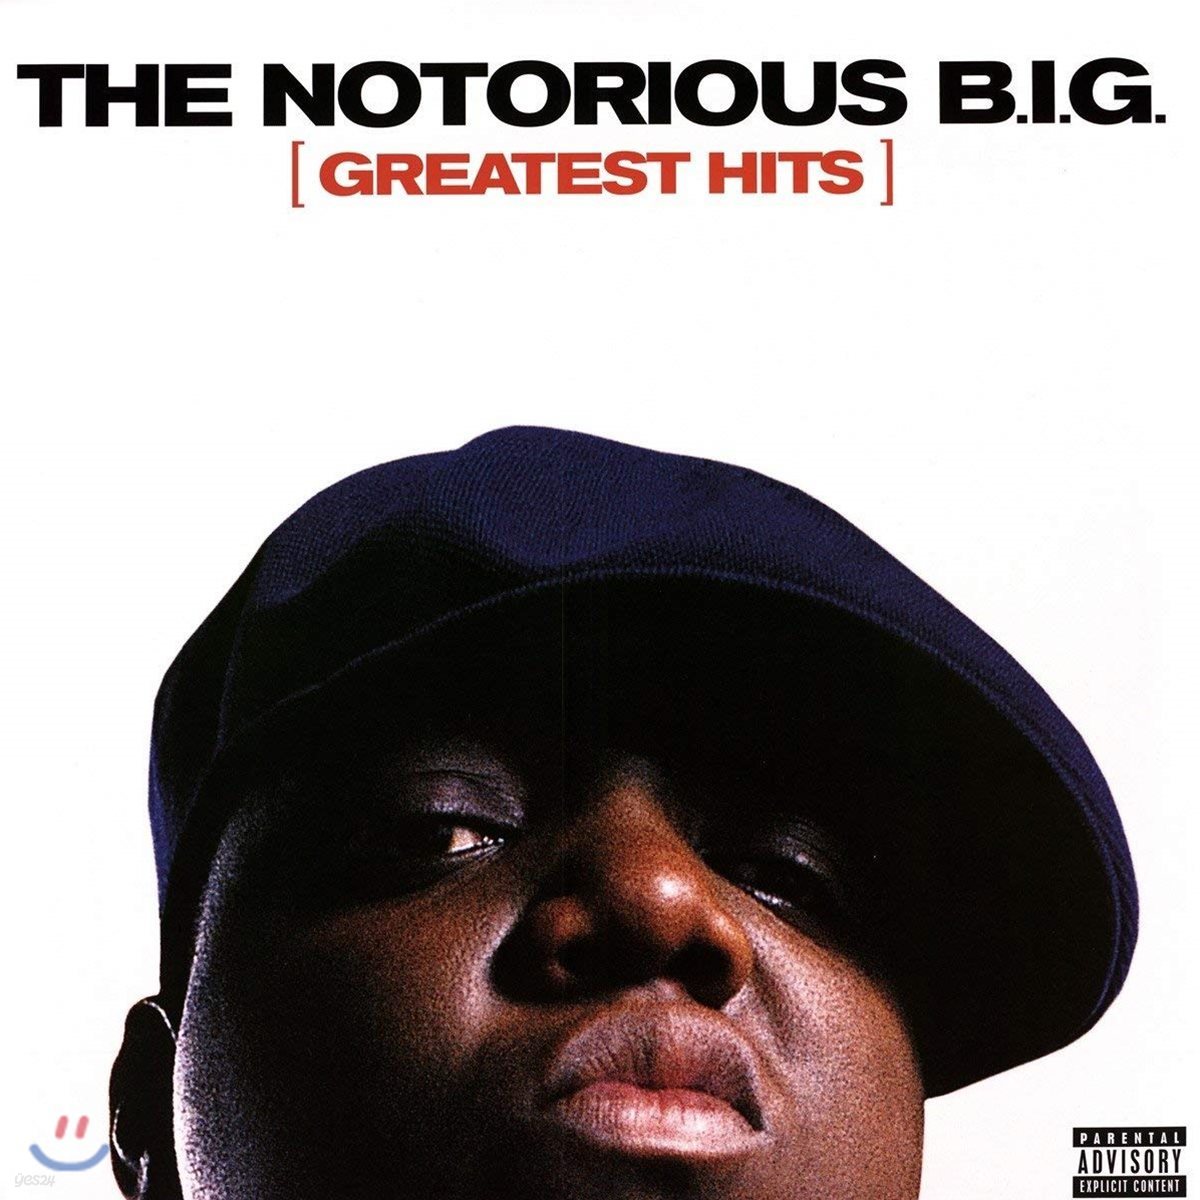 The Notorious B.I.G. - Greatest Hits 노토리어스 비아이지 베스트 앨범 [2 LP]